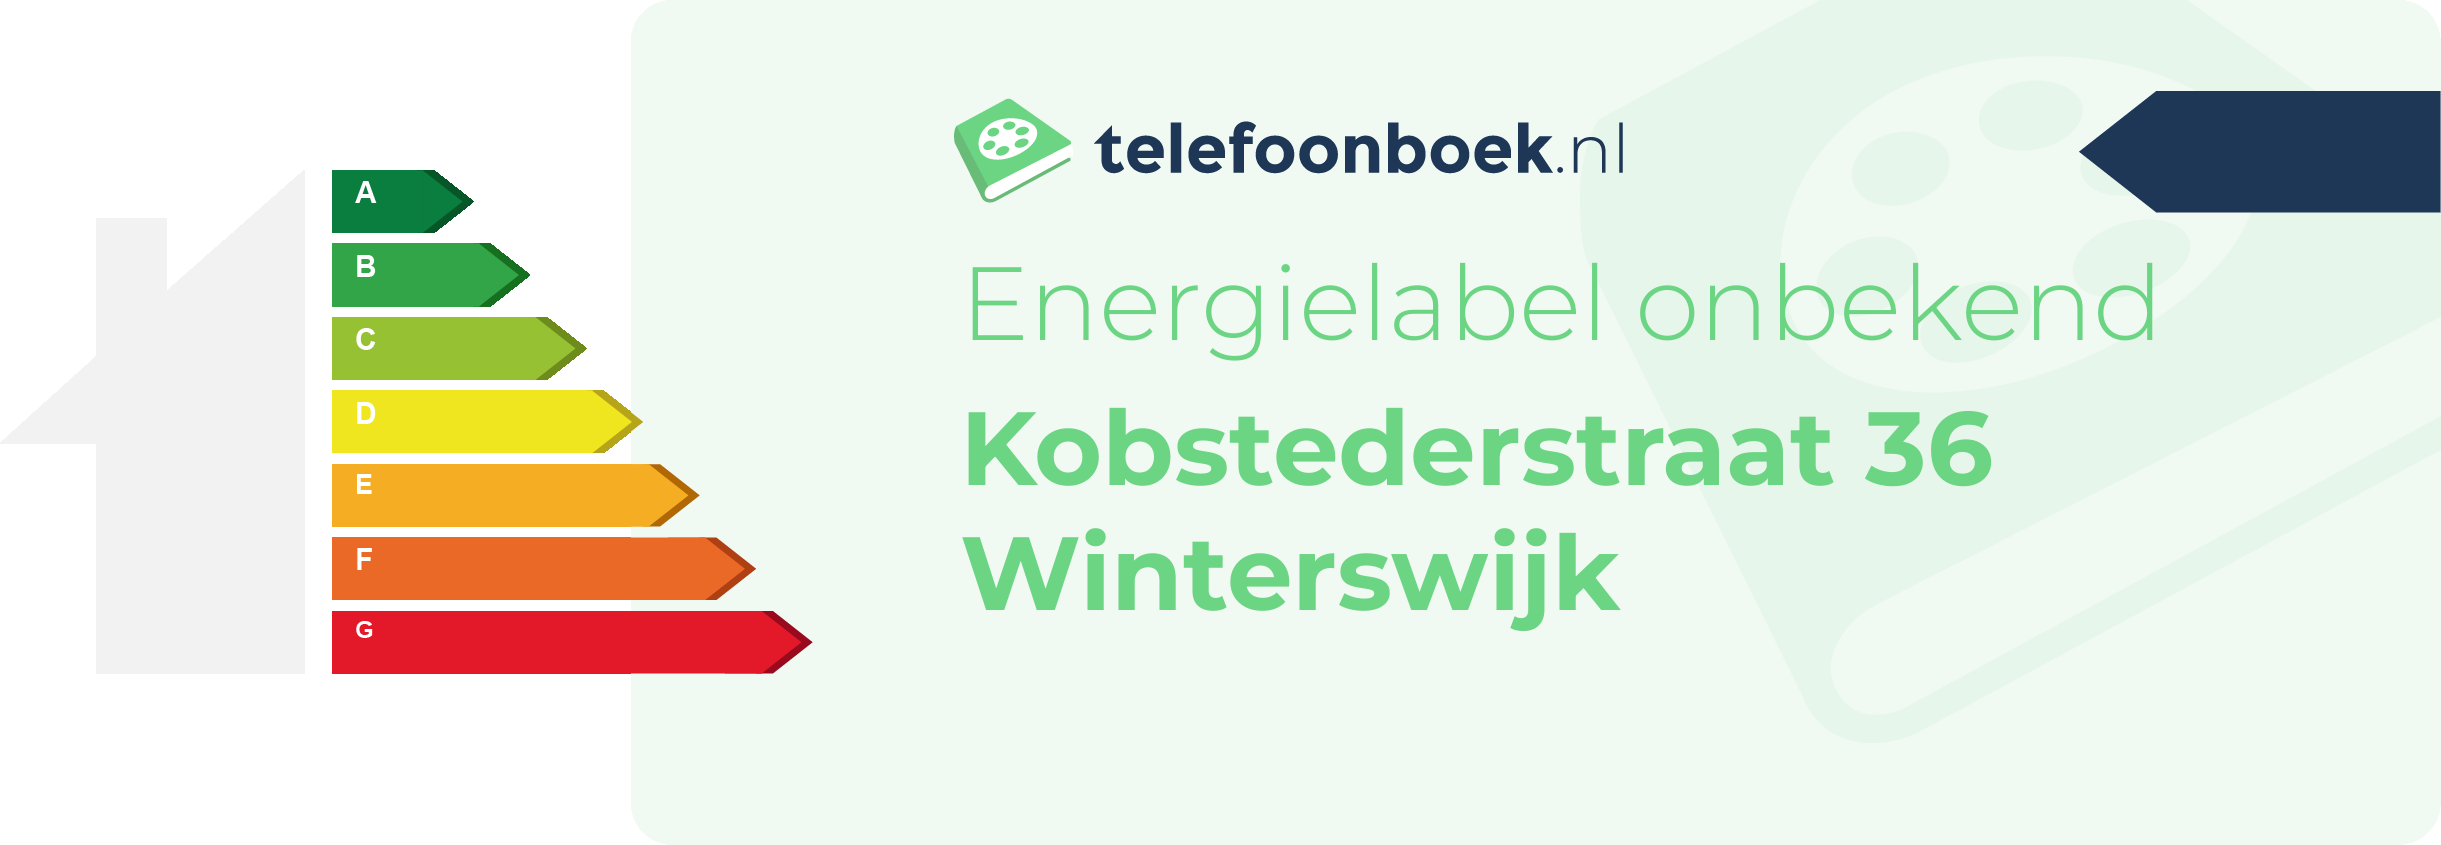 Energielabel Kobstederstraat 36 Winterswijk